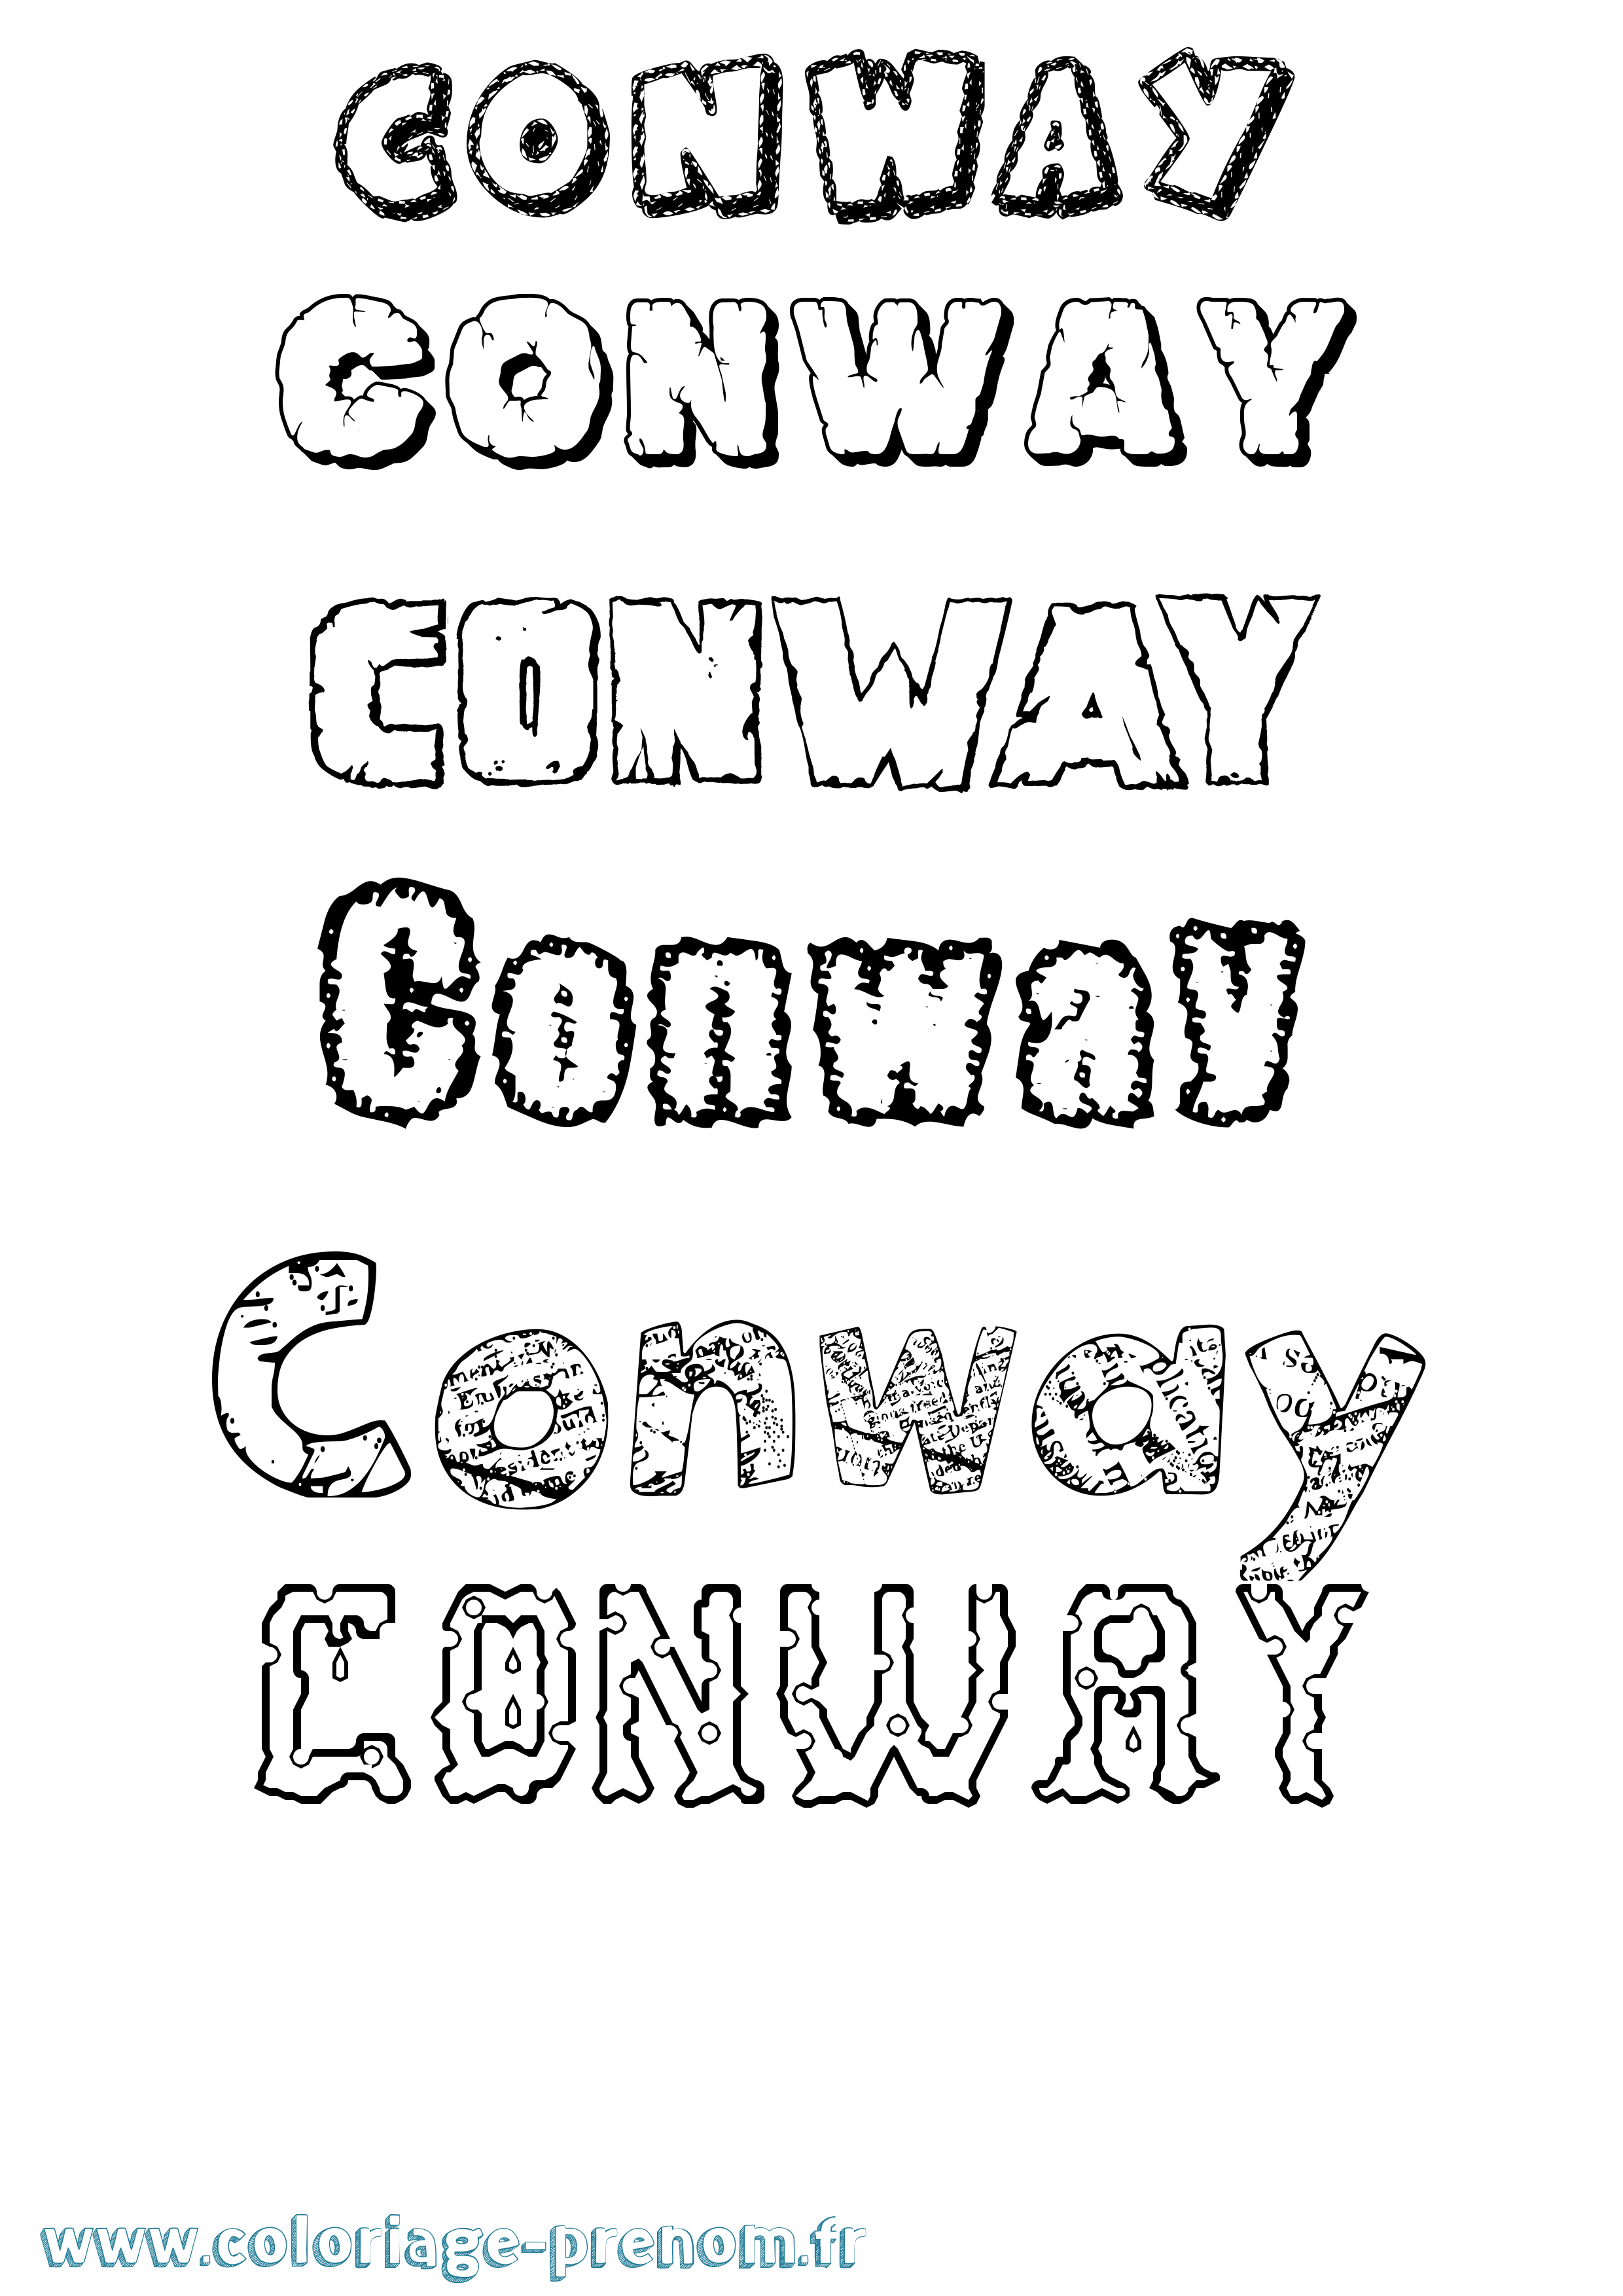 Coloriage prénom Conway Destructuré